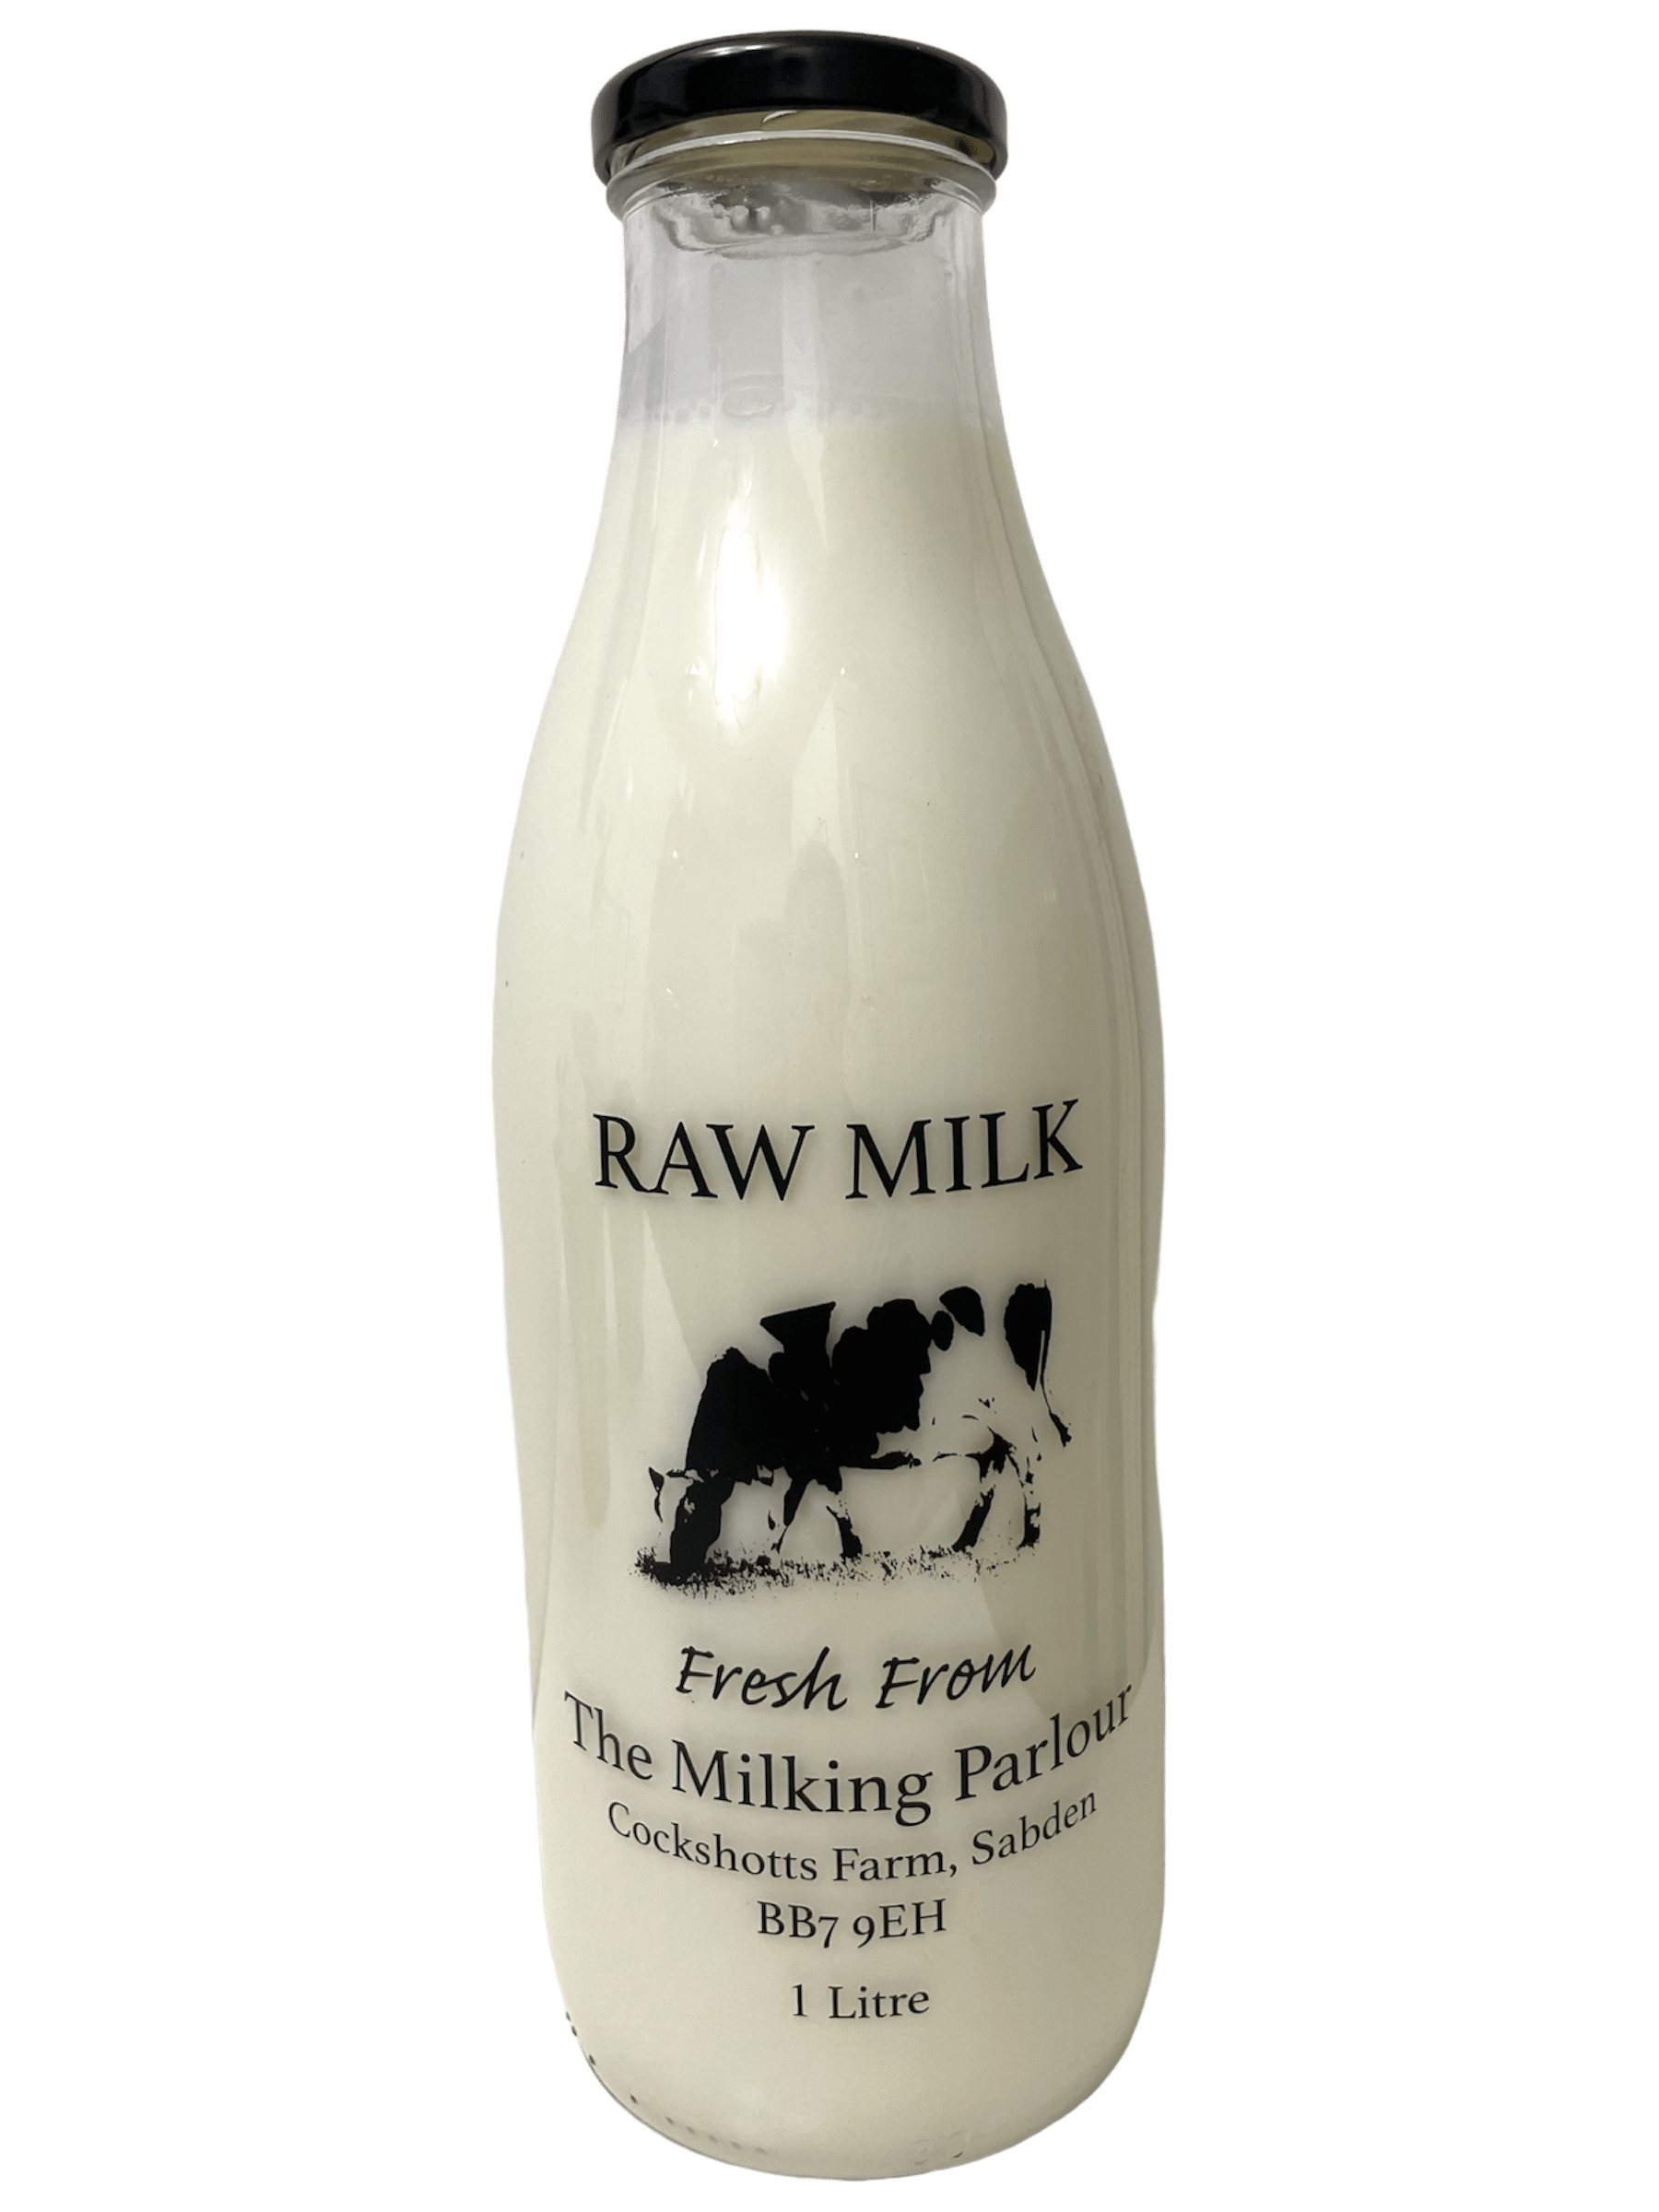 The Milking Parlour - www.Kelis.info #KelisTheBottleBank